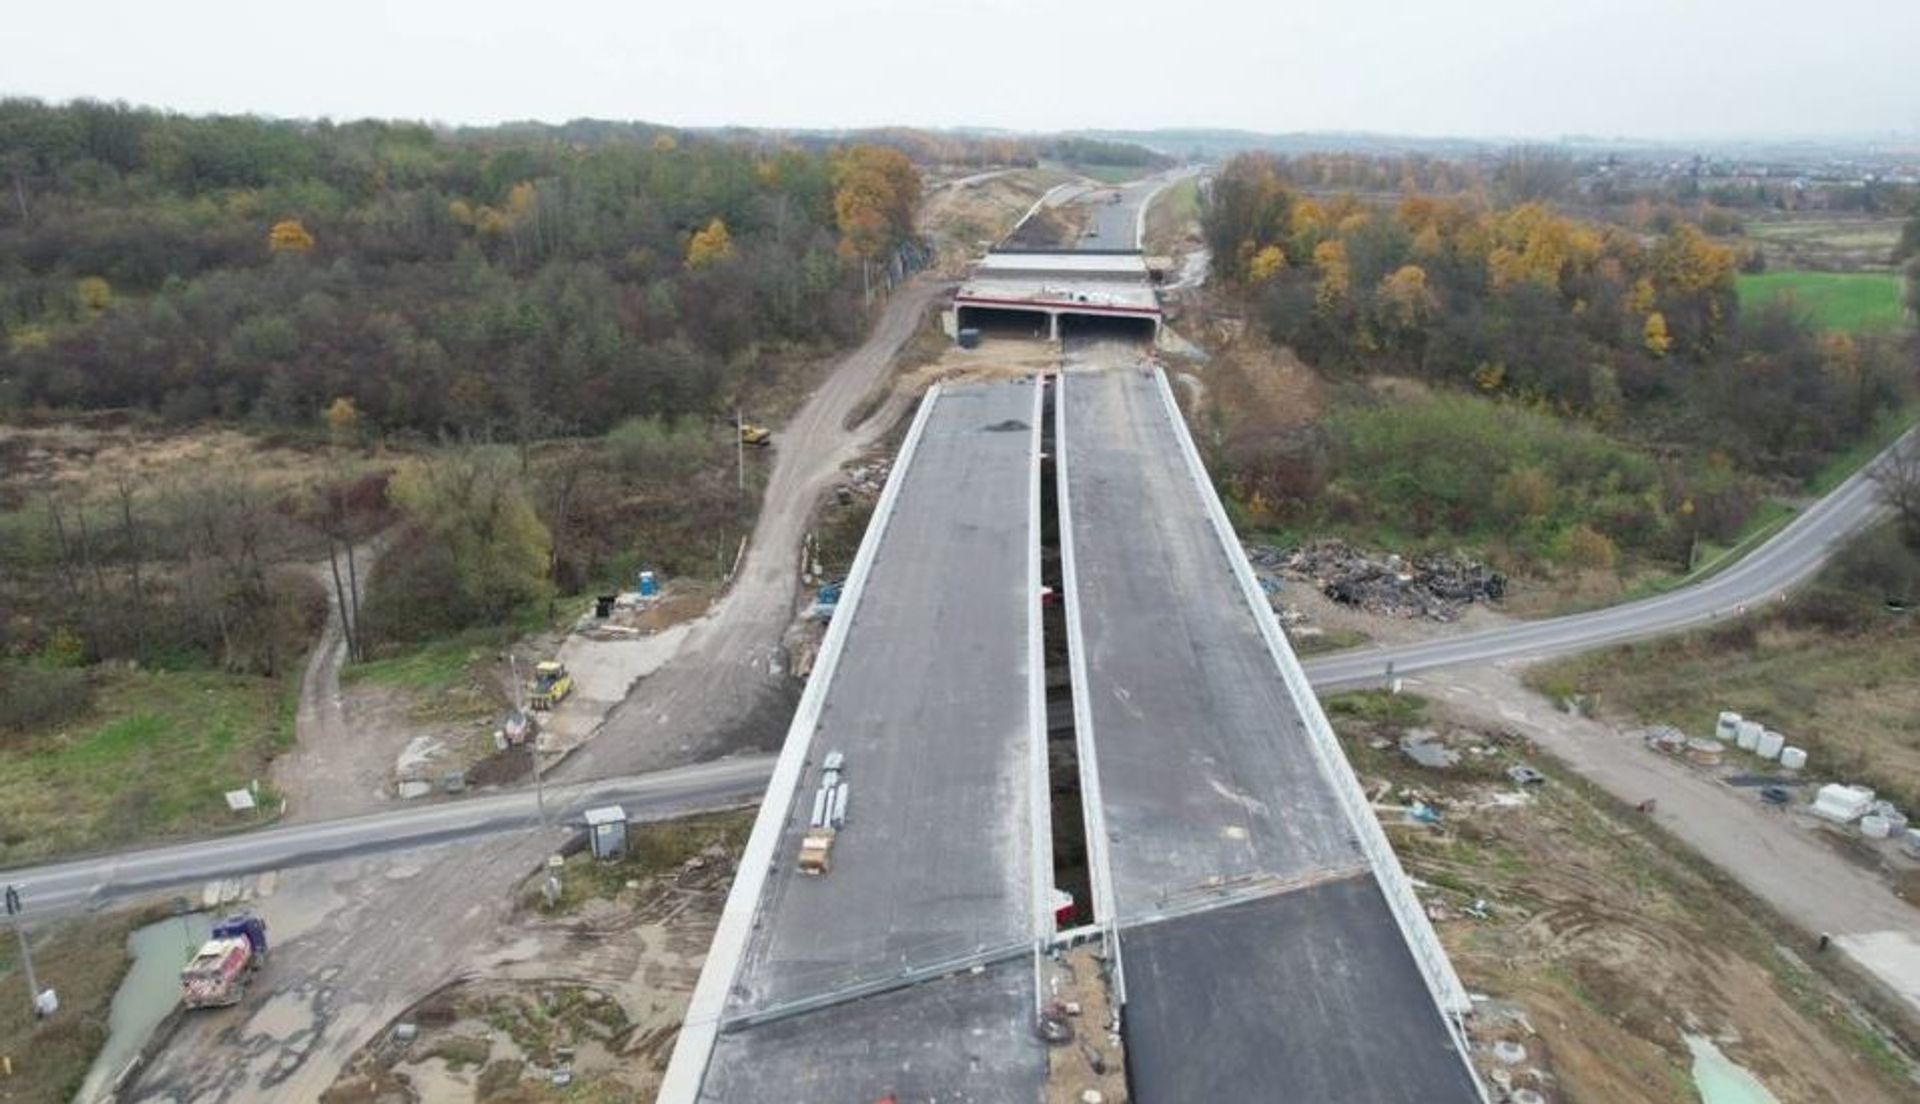 Trwają zaawansowane prace na budowie S52 Północnej Obwodnicy Krakowa 